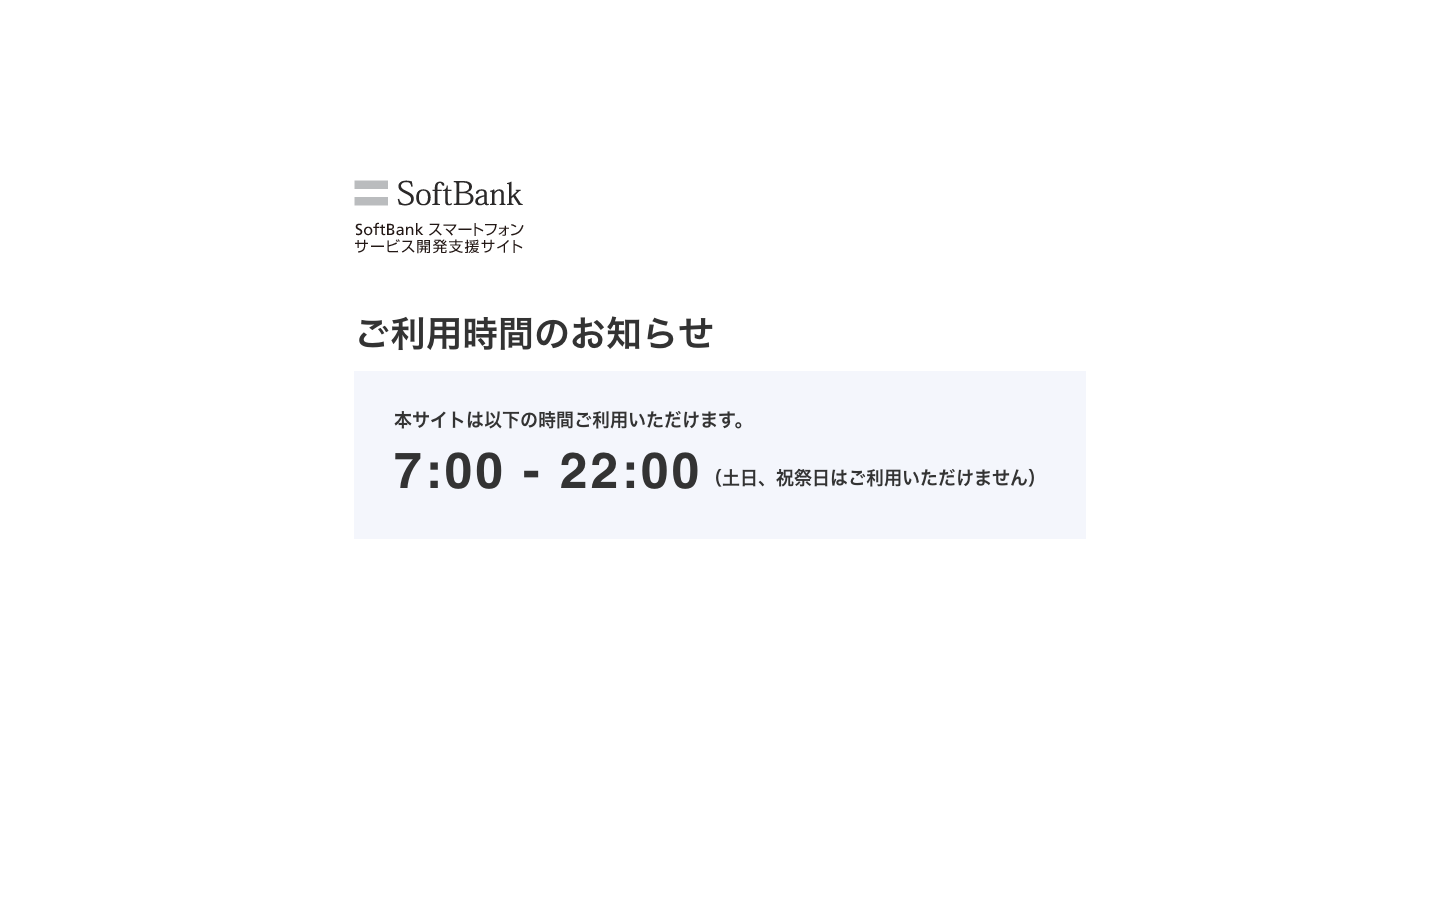 SoftBankスマートフォン サービス開発支援サイト 及び サポートサイトのご利用者さま｜営業時間外のため、サイトをご利用いただけません｜ご利用時間7:00～22:00（土日・祝祭日を除く）｜ご利用者様におかれましてはご不便をおかけしますが、ご協力のほどお願い申し上げます。